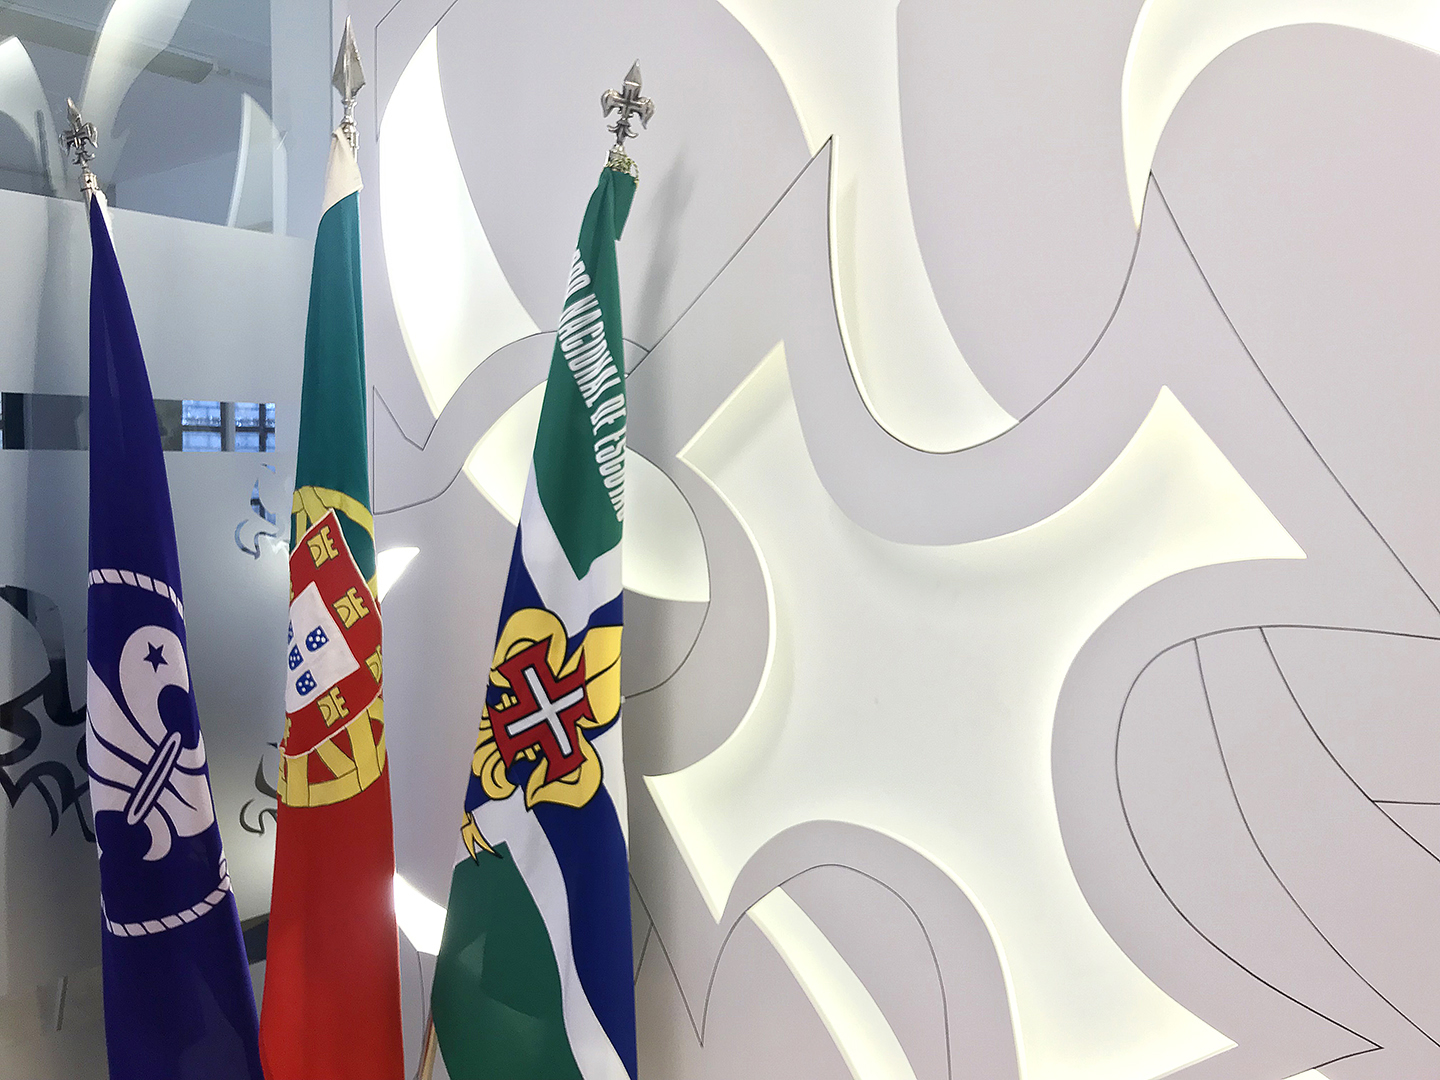 Vista da entrada comum da Casa do Escuteiro II e Museu CNE, com as bandeiras WOSM, da República Portuguesa e do Corpo Nacional de Escutas